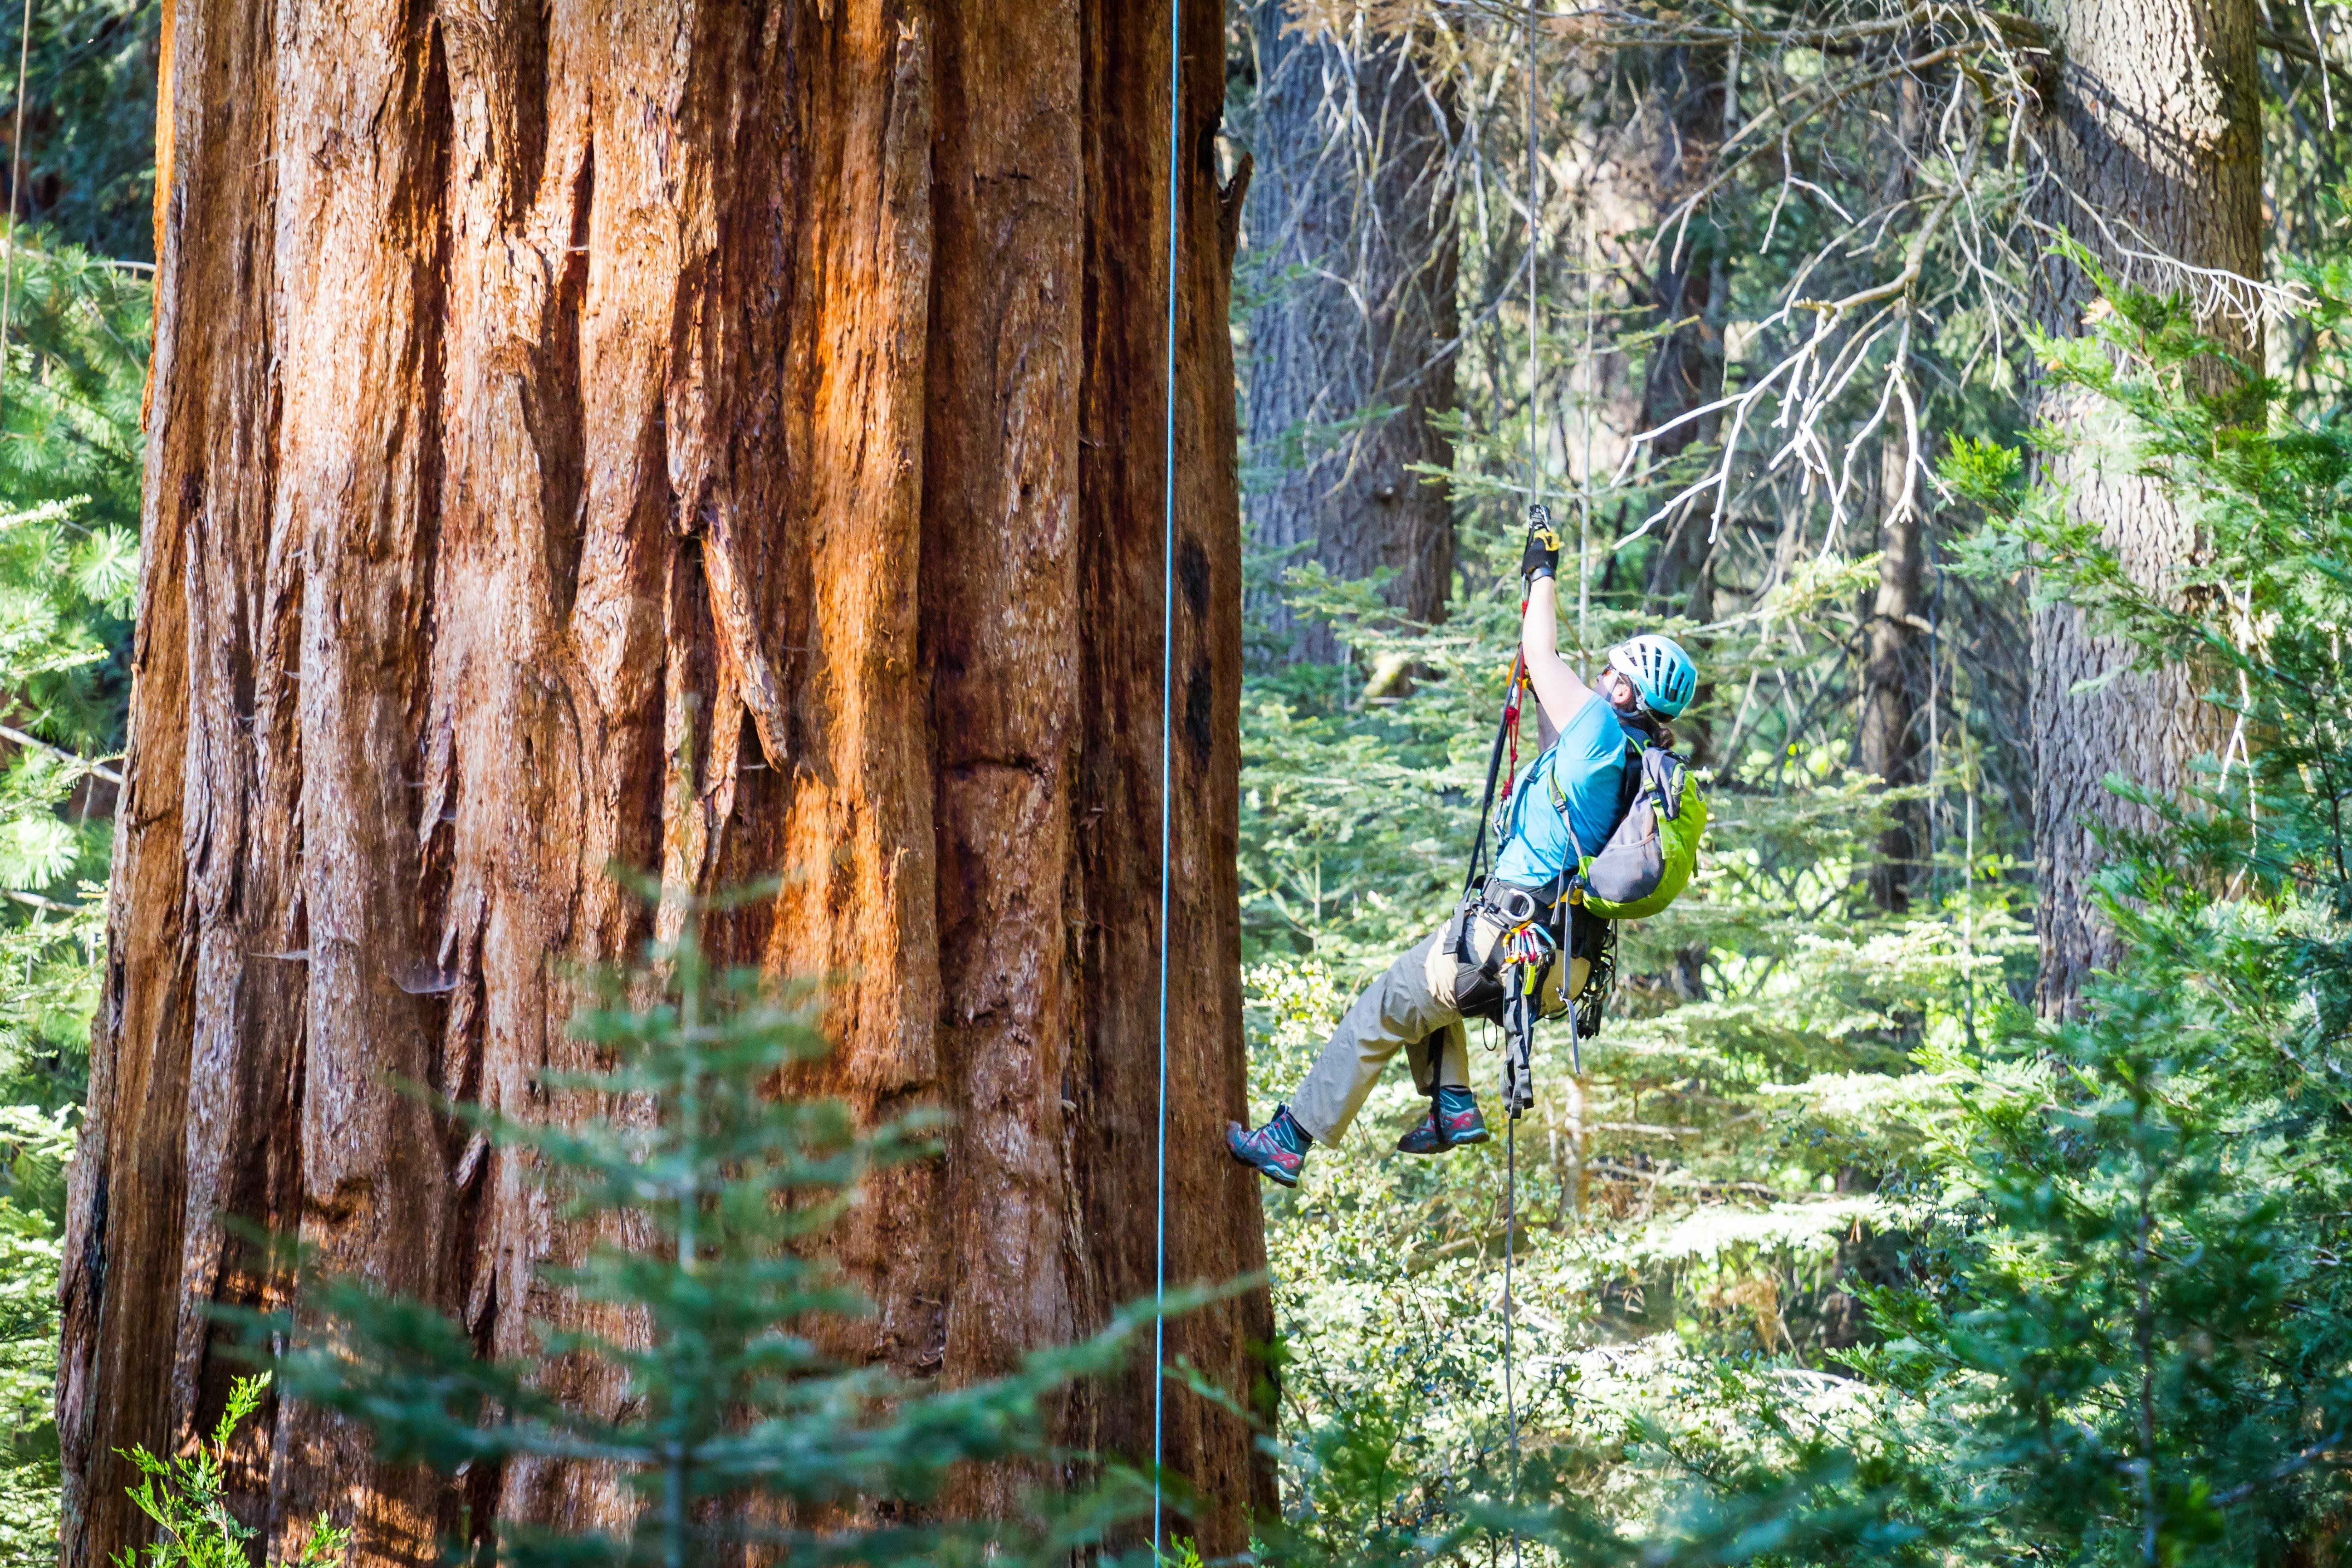 ツリークライミングの達人が選ぶ “難攻不落の巨木” ベスト7 | アーボリスト | 木登り | アドベンチャー